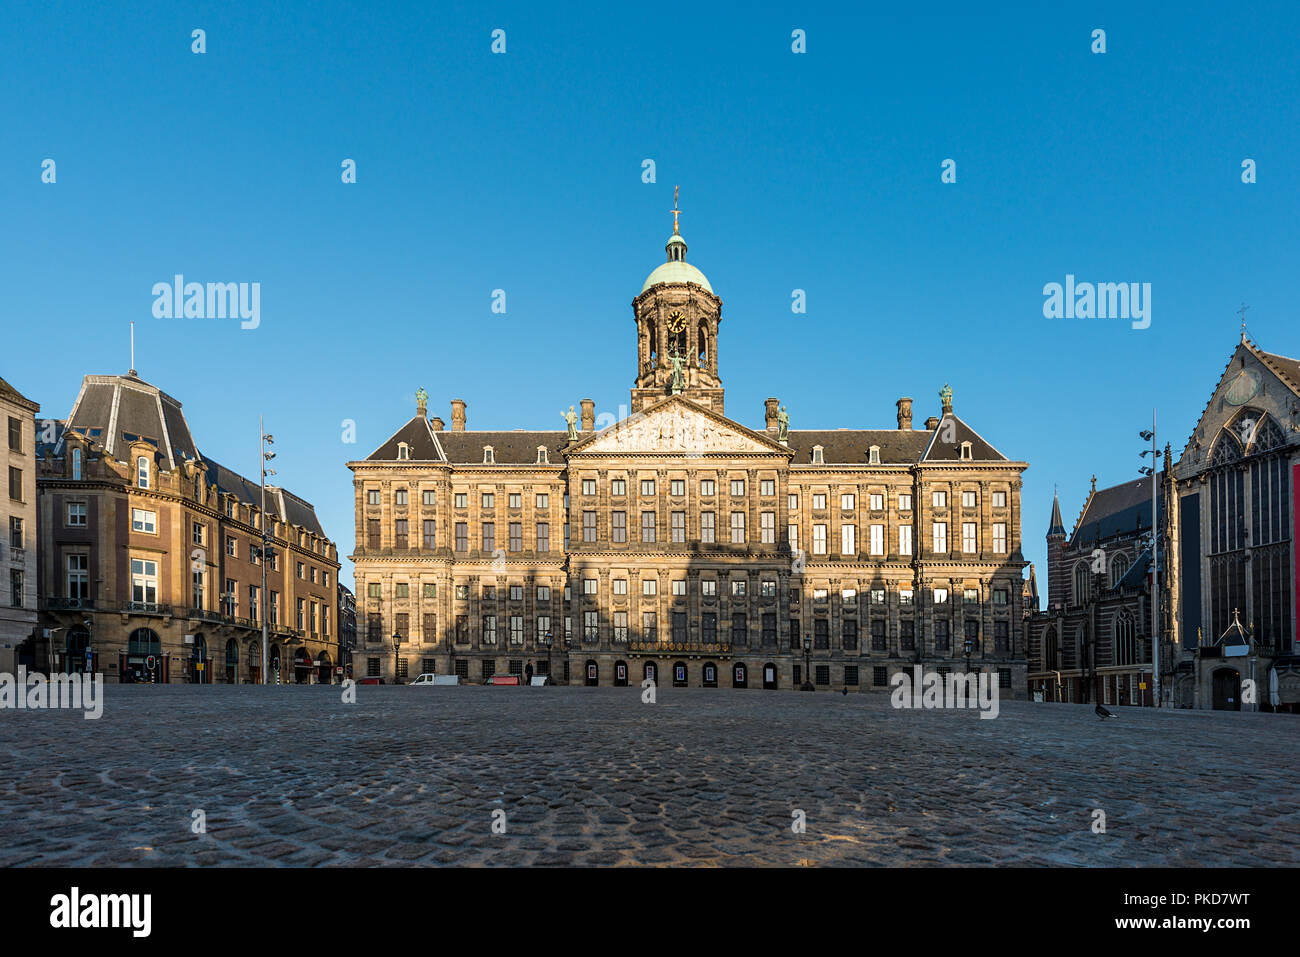 Königlicher Palast auf dem Dam Platz in Amsterdam, Niederlande. Kein Volk Damplatz in Amsterdam, Niederlande. Stockfoto